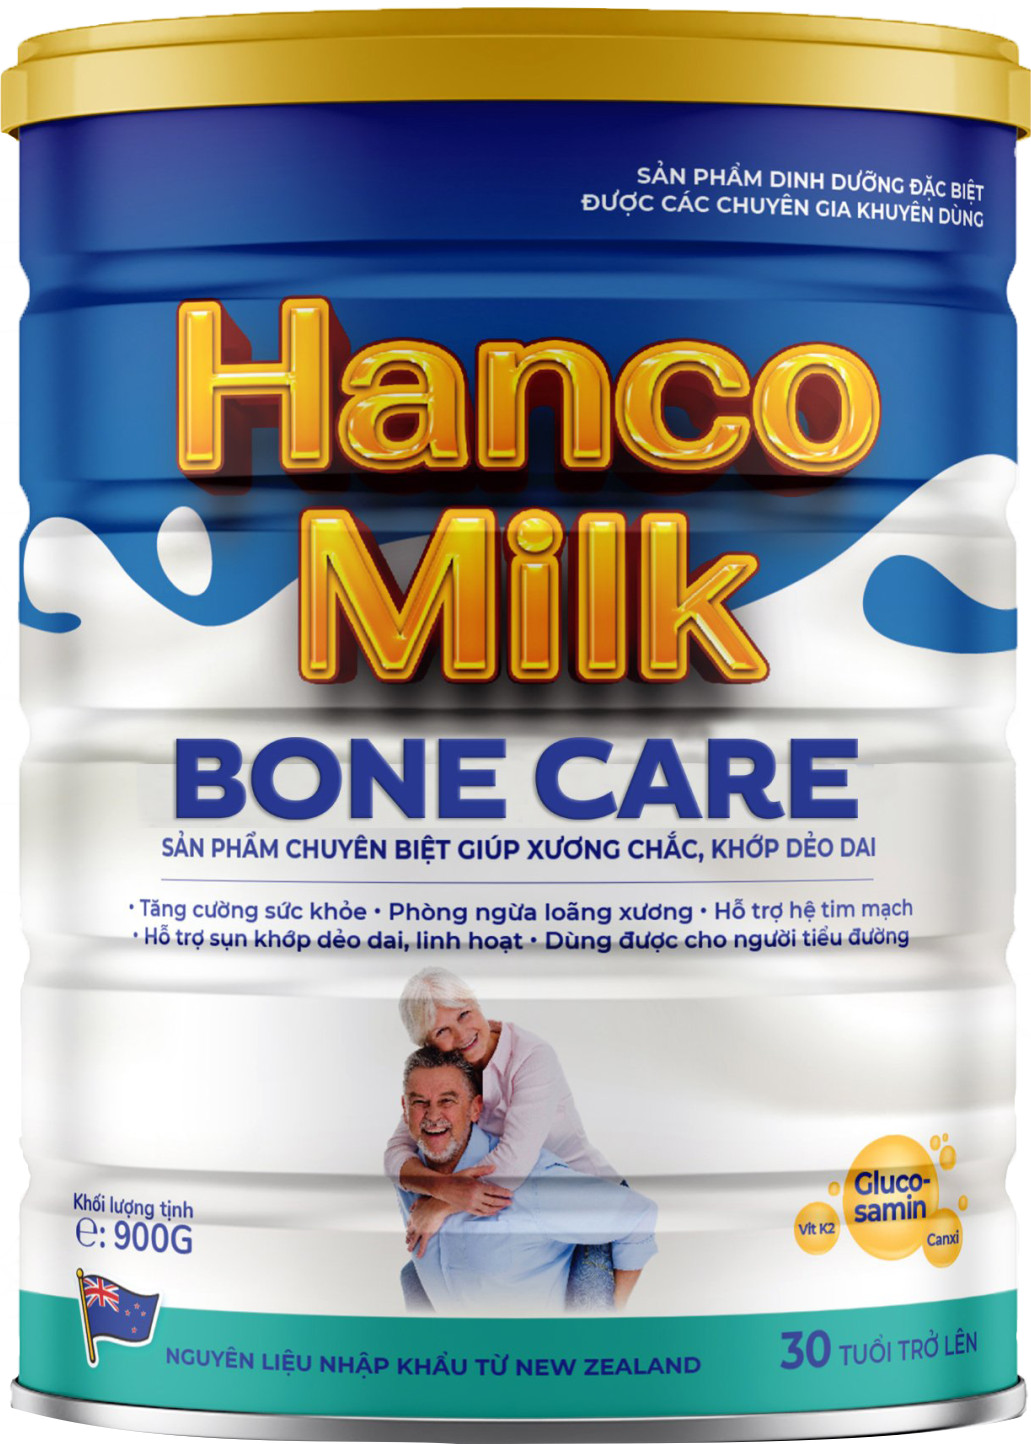 Sữa Hancomilk xương khớp dành cho đối tượng sử dụng nào?
